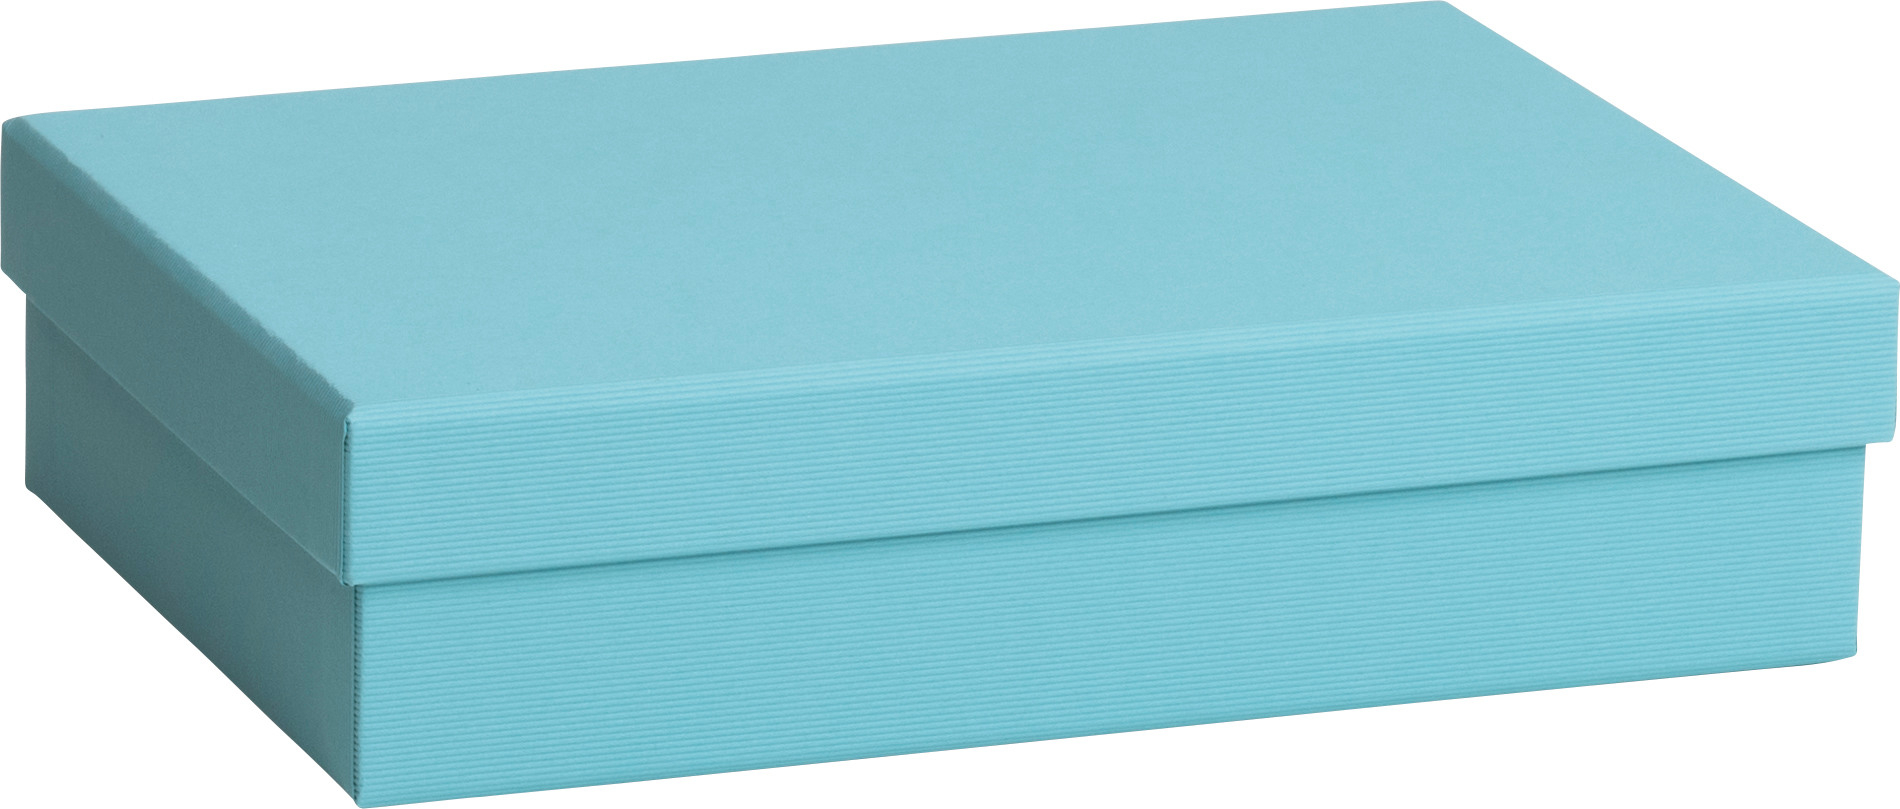 STEWO Geschenkbox One Colour 2551783492 blau hell 16.5x24x6cm